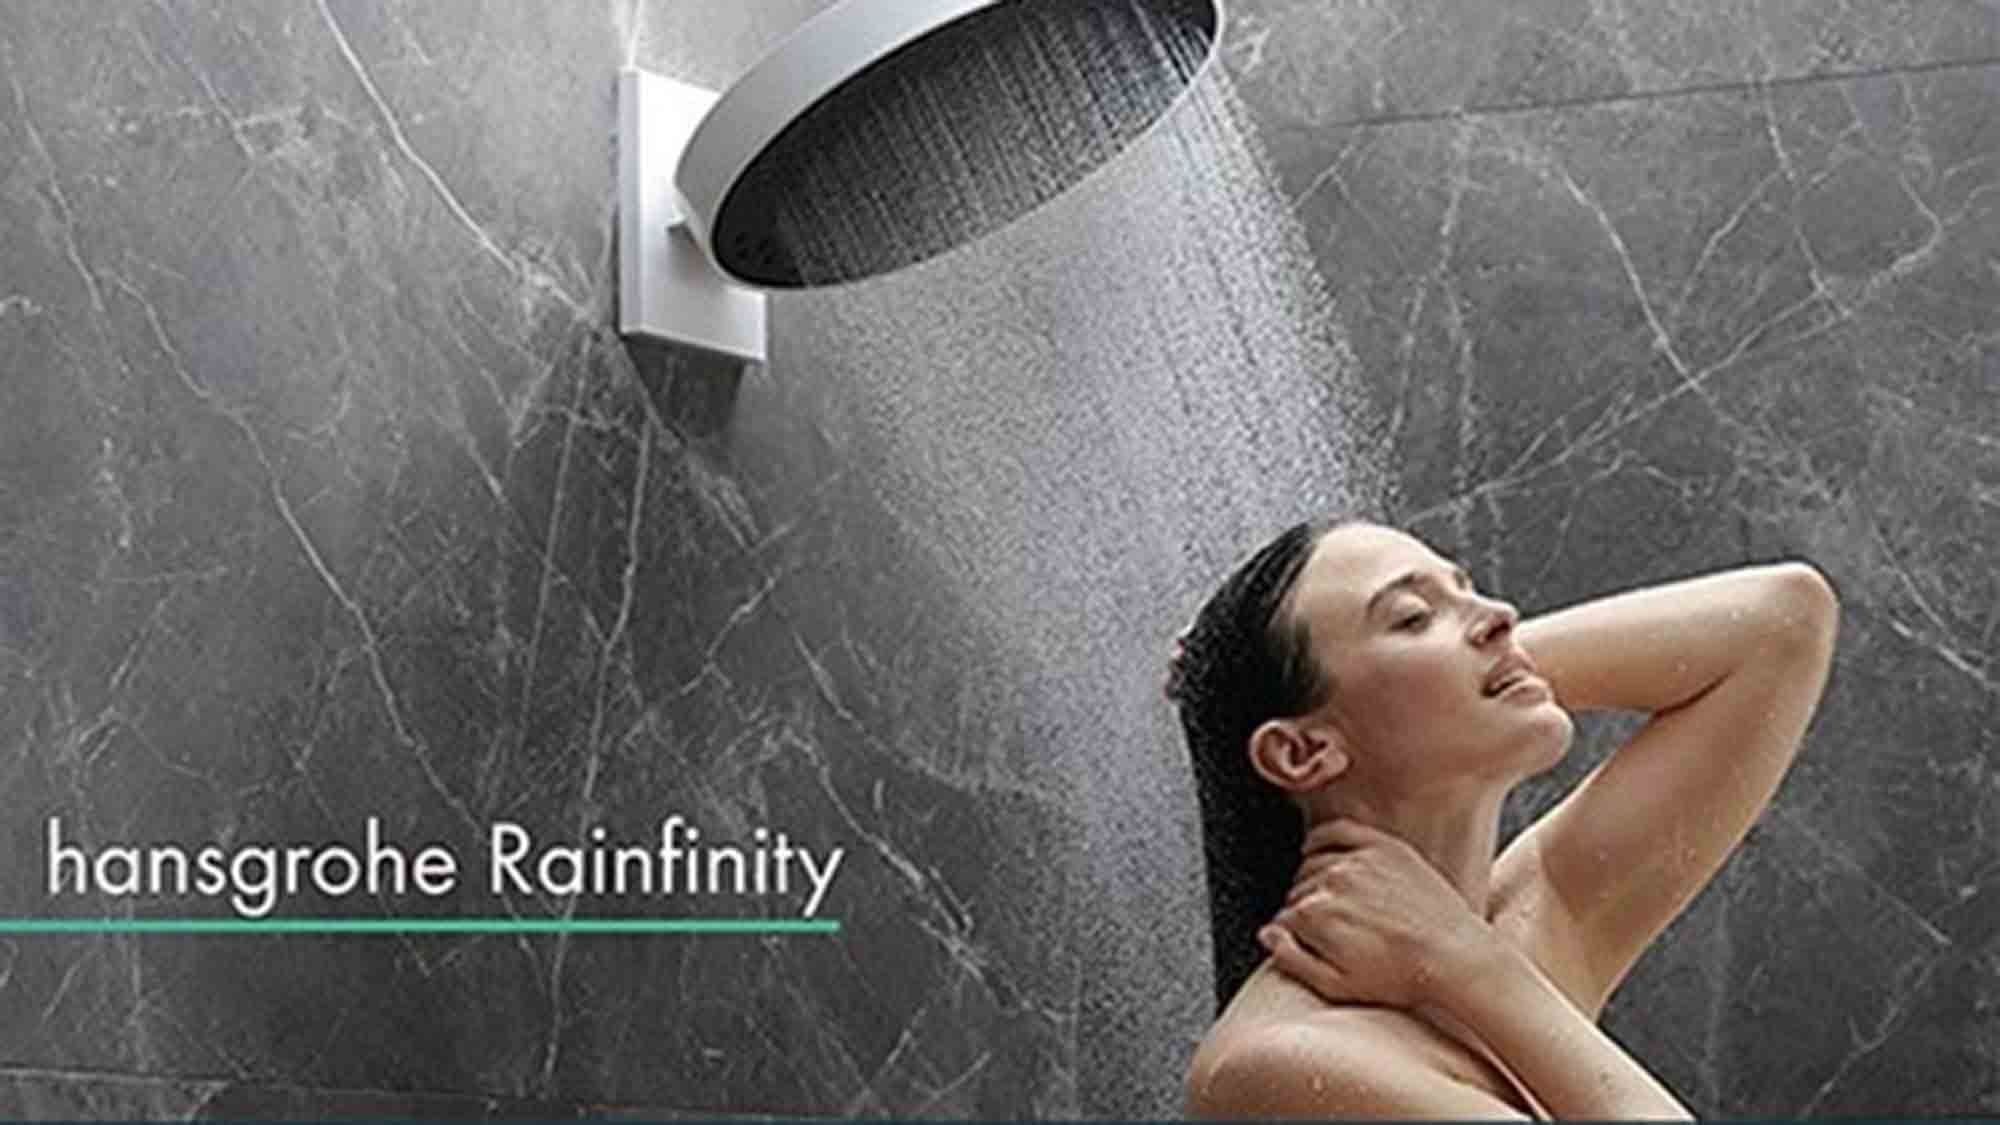 Skybad: Pure Freude beim Duschen – mit weniger Wasser, die Hansgrohe Rainfinity Kollektion